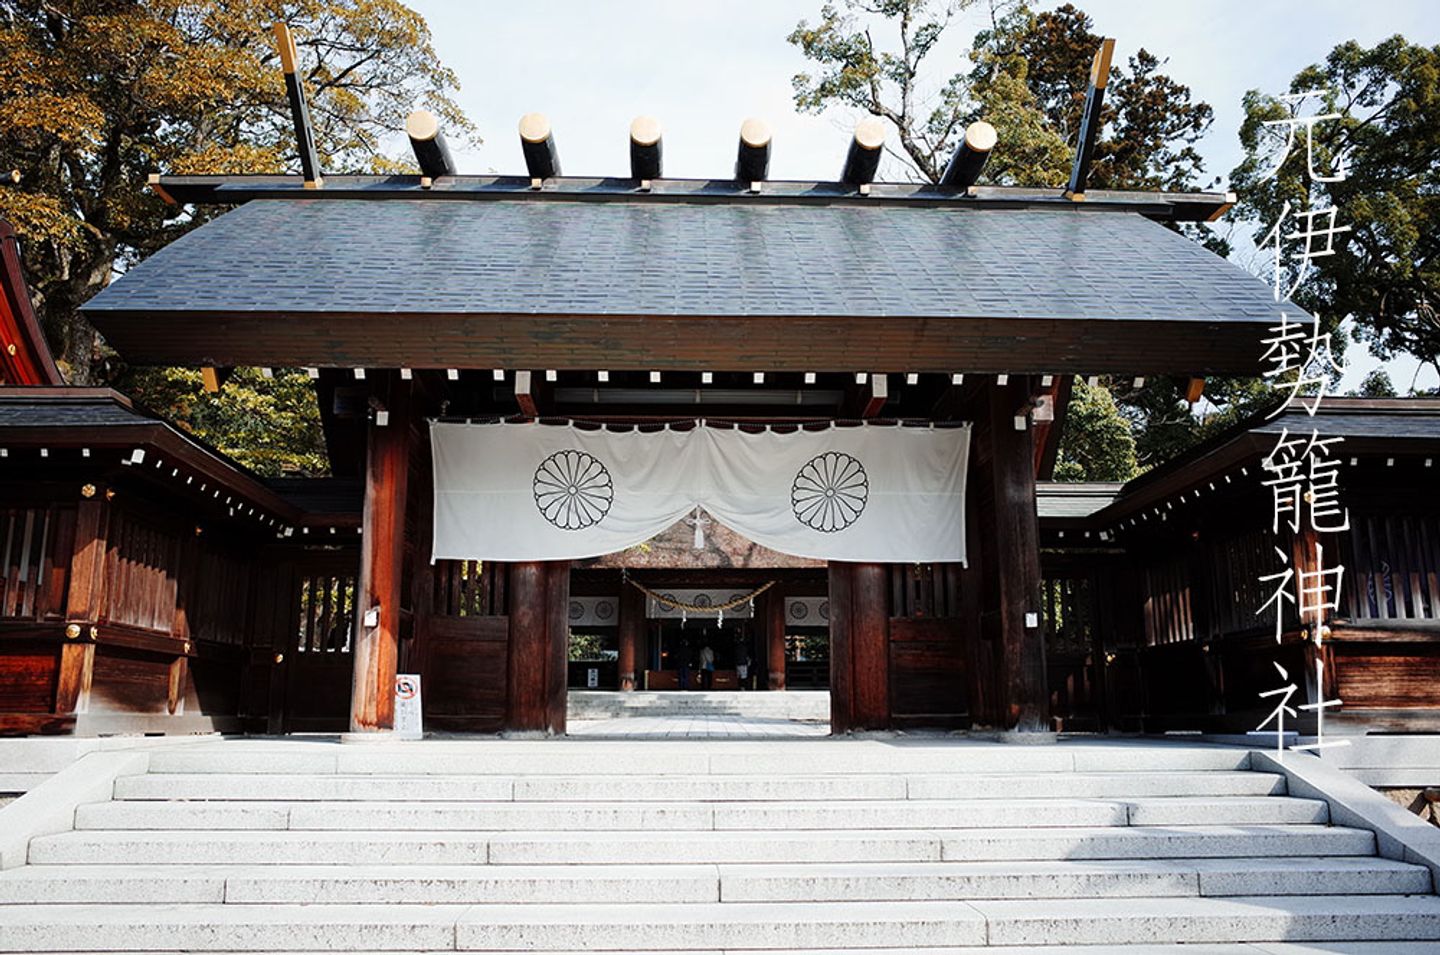 神社 籠 籠神社に秘められた日本の根幹を揺るがす謎